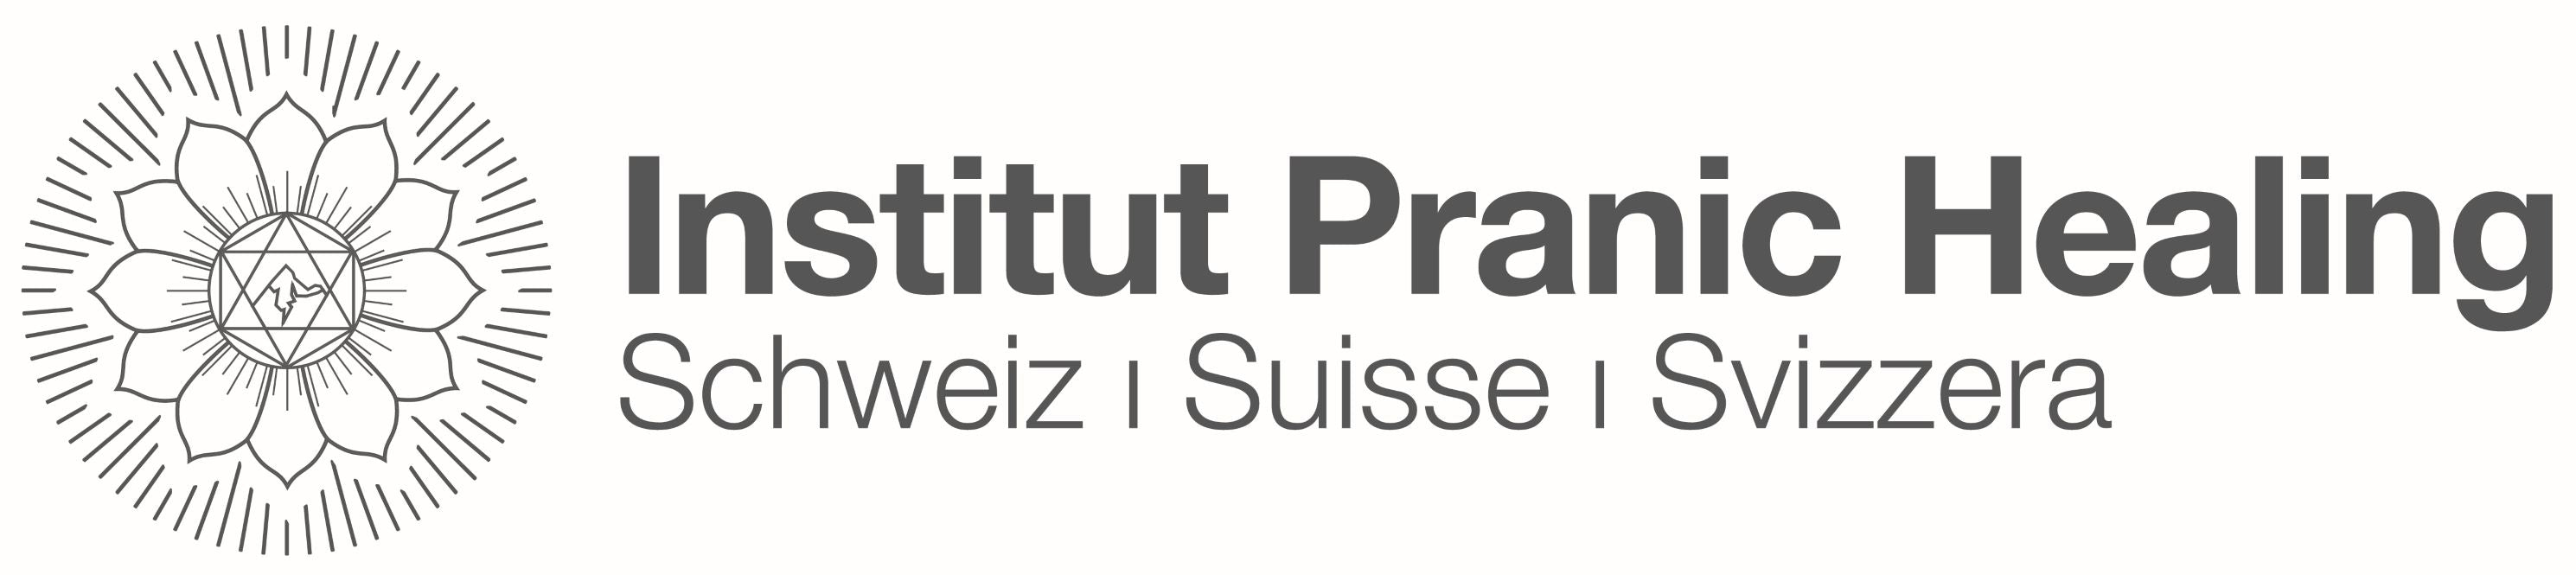 Pranic Healing Switzerland logo